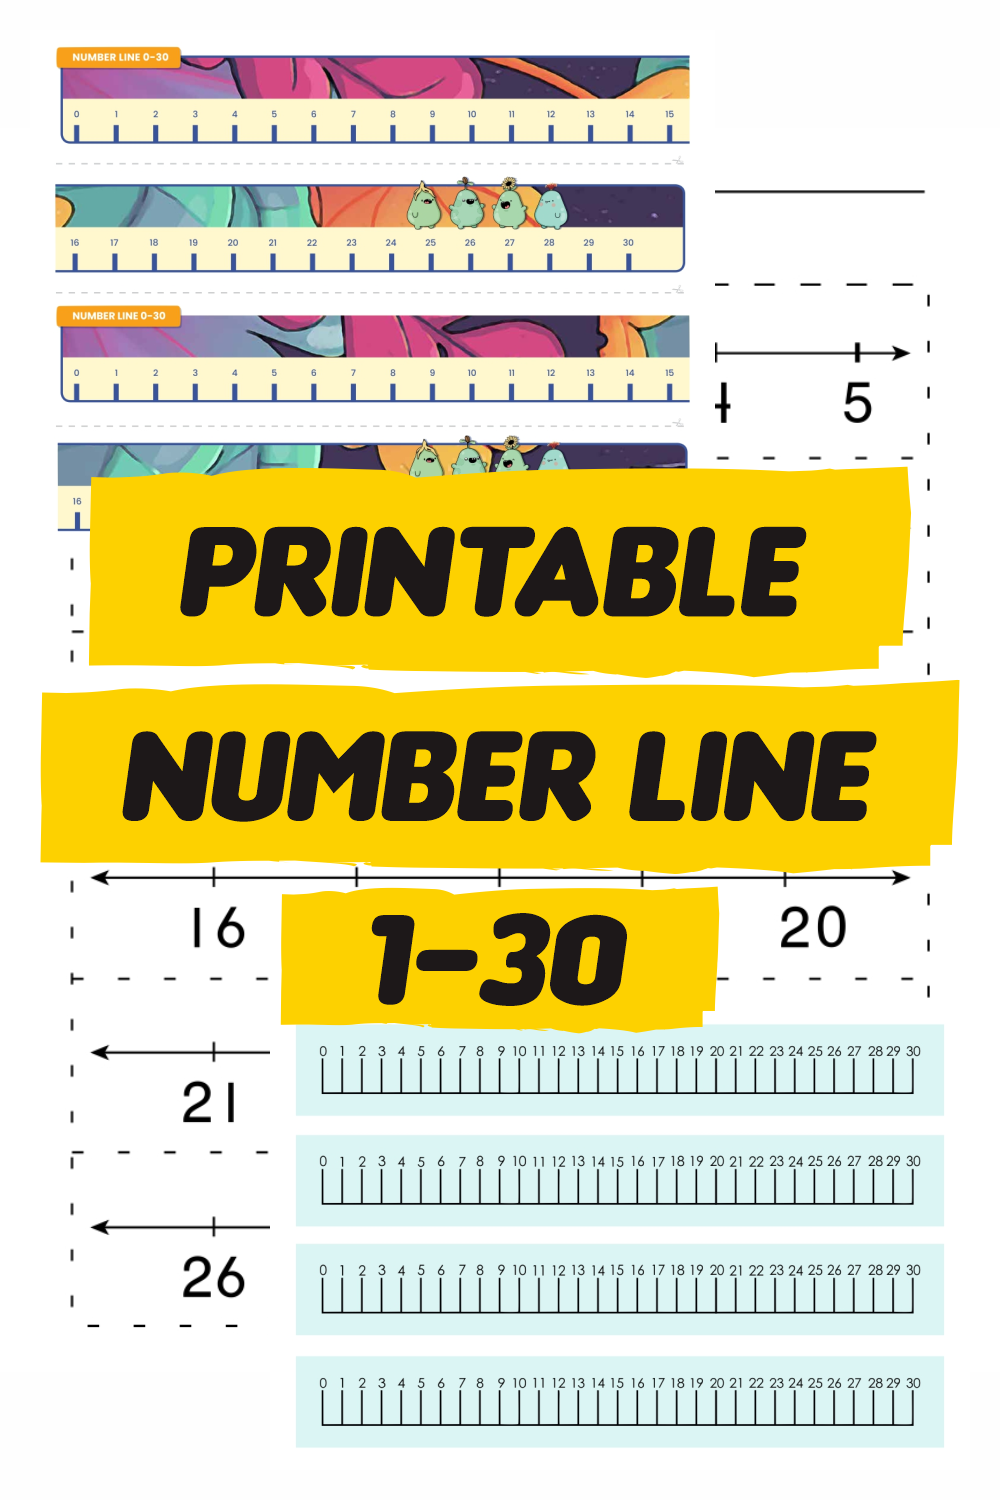 Printable Number Line 1-30